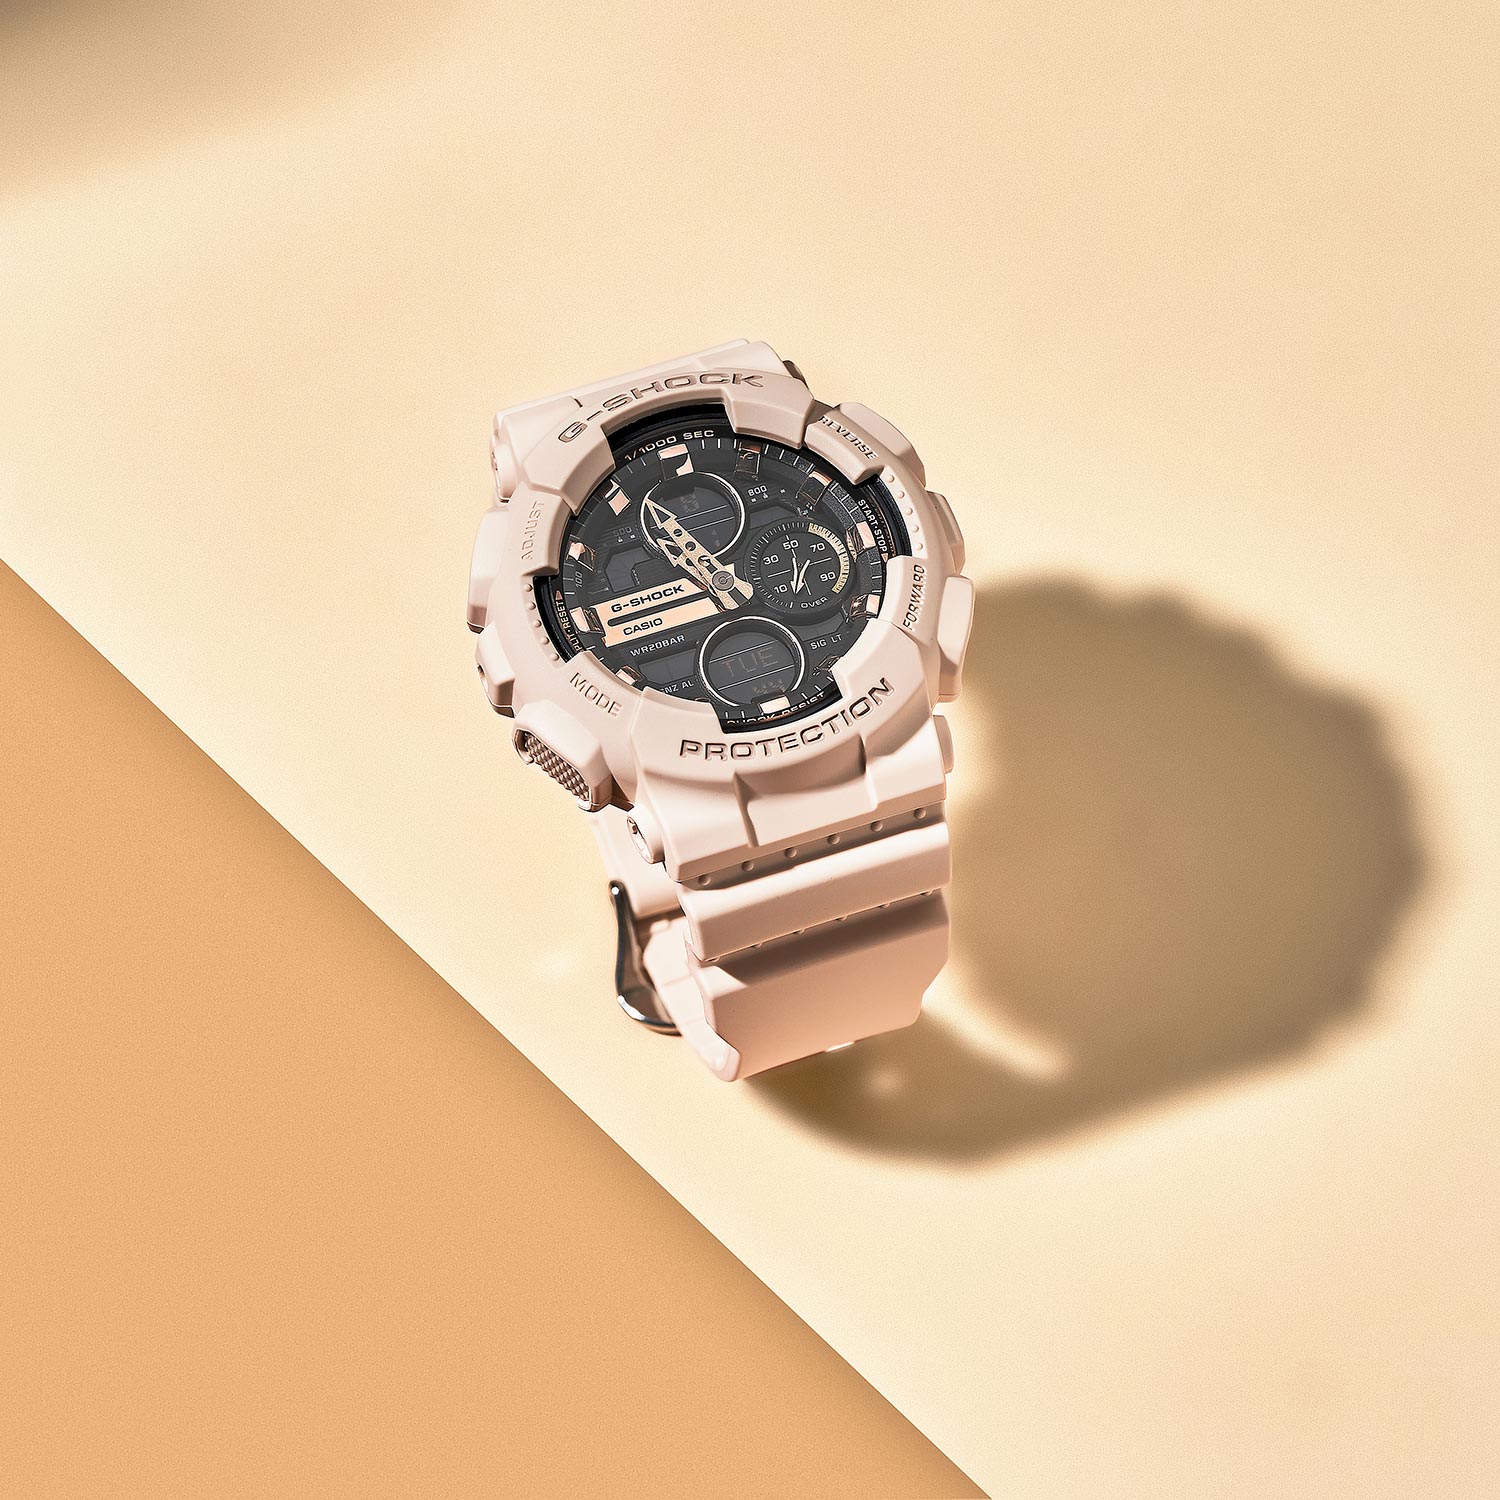 Наручные часы Casio G-SHOCK GMA-S140M-4AER — описание цене, характеристики, фото, AllTime.ru лучшей в инструкция, отзывы, интернет-магазине по купить